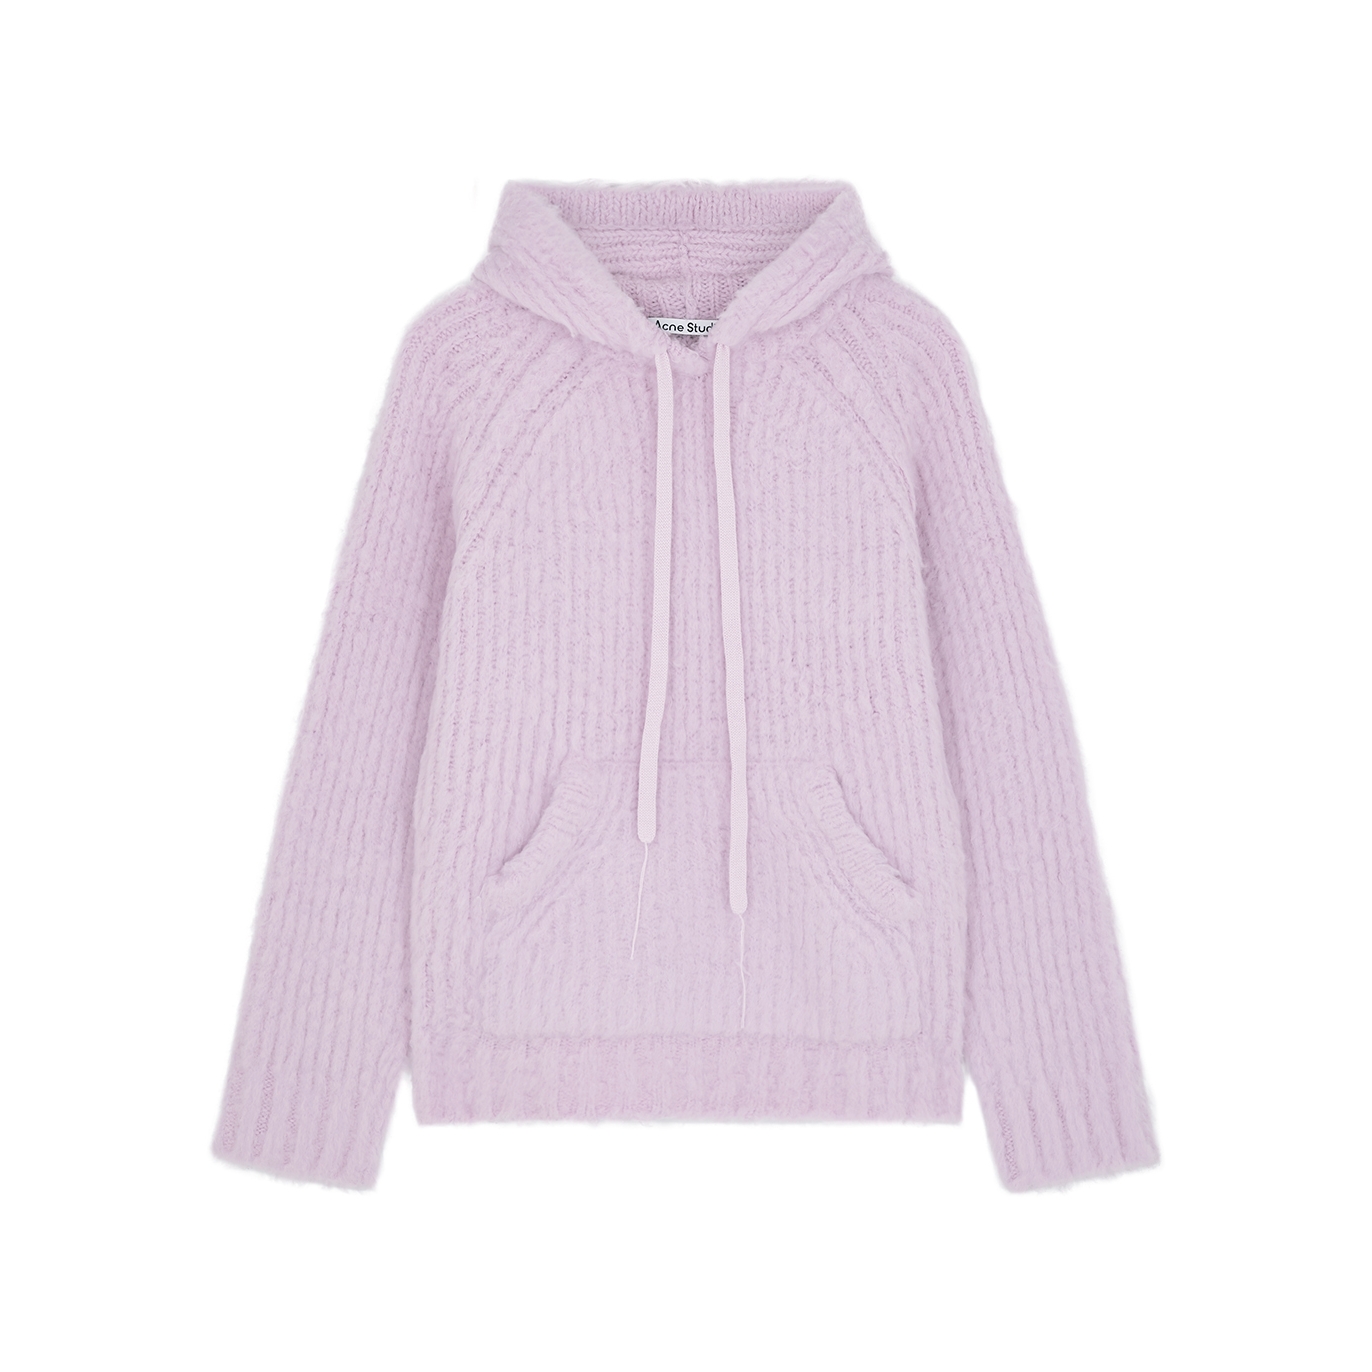 Acne Studios Kosie Hooded Wool-blend Sweatshirt - Lilac - S/M